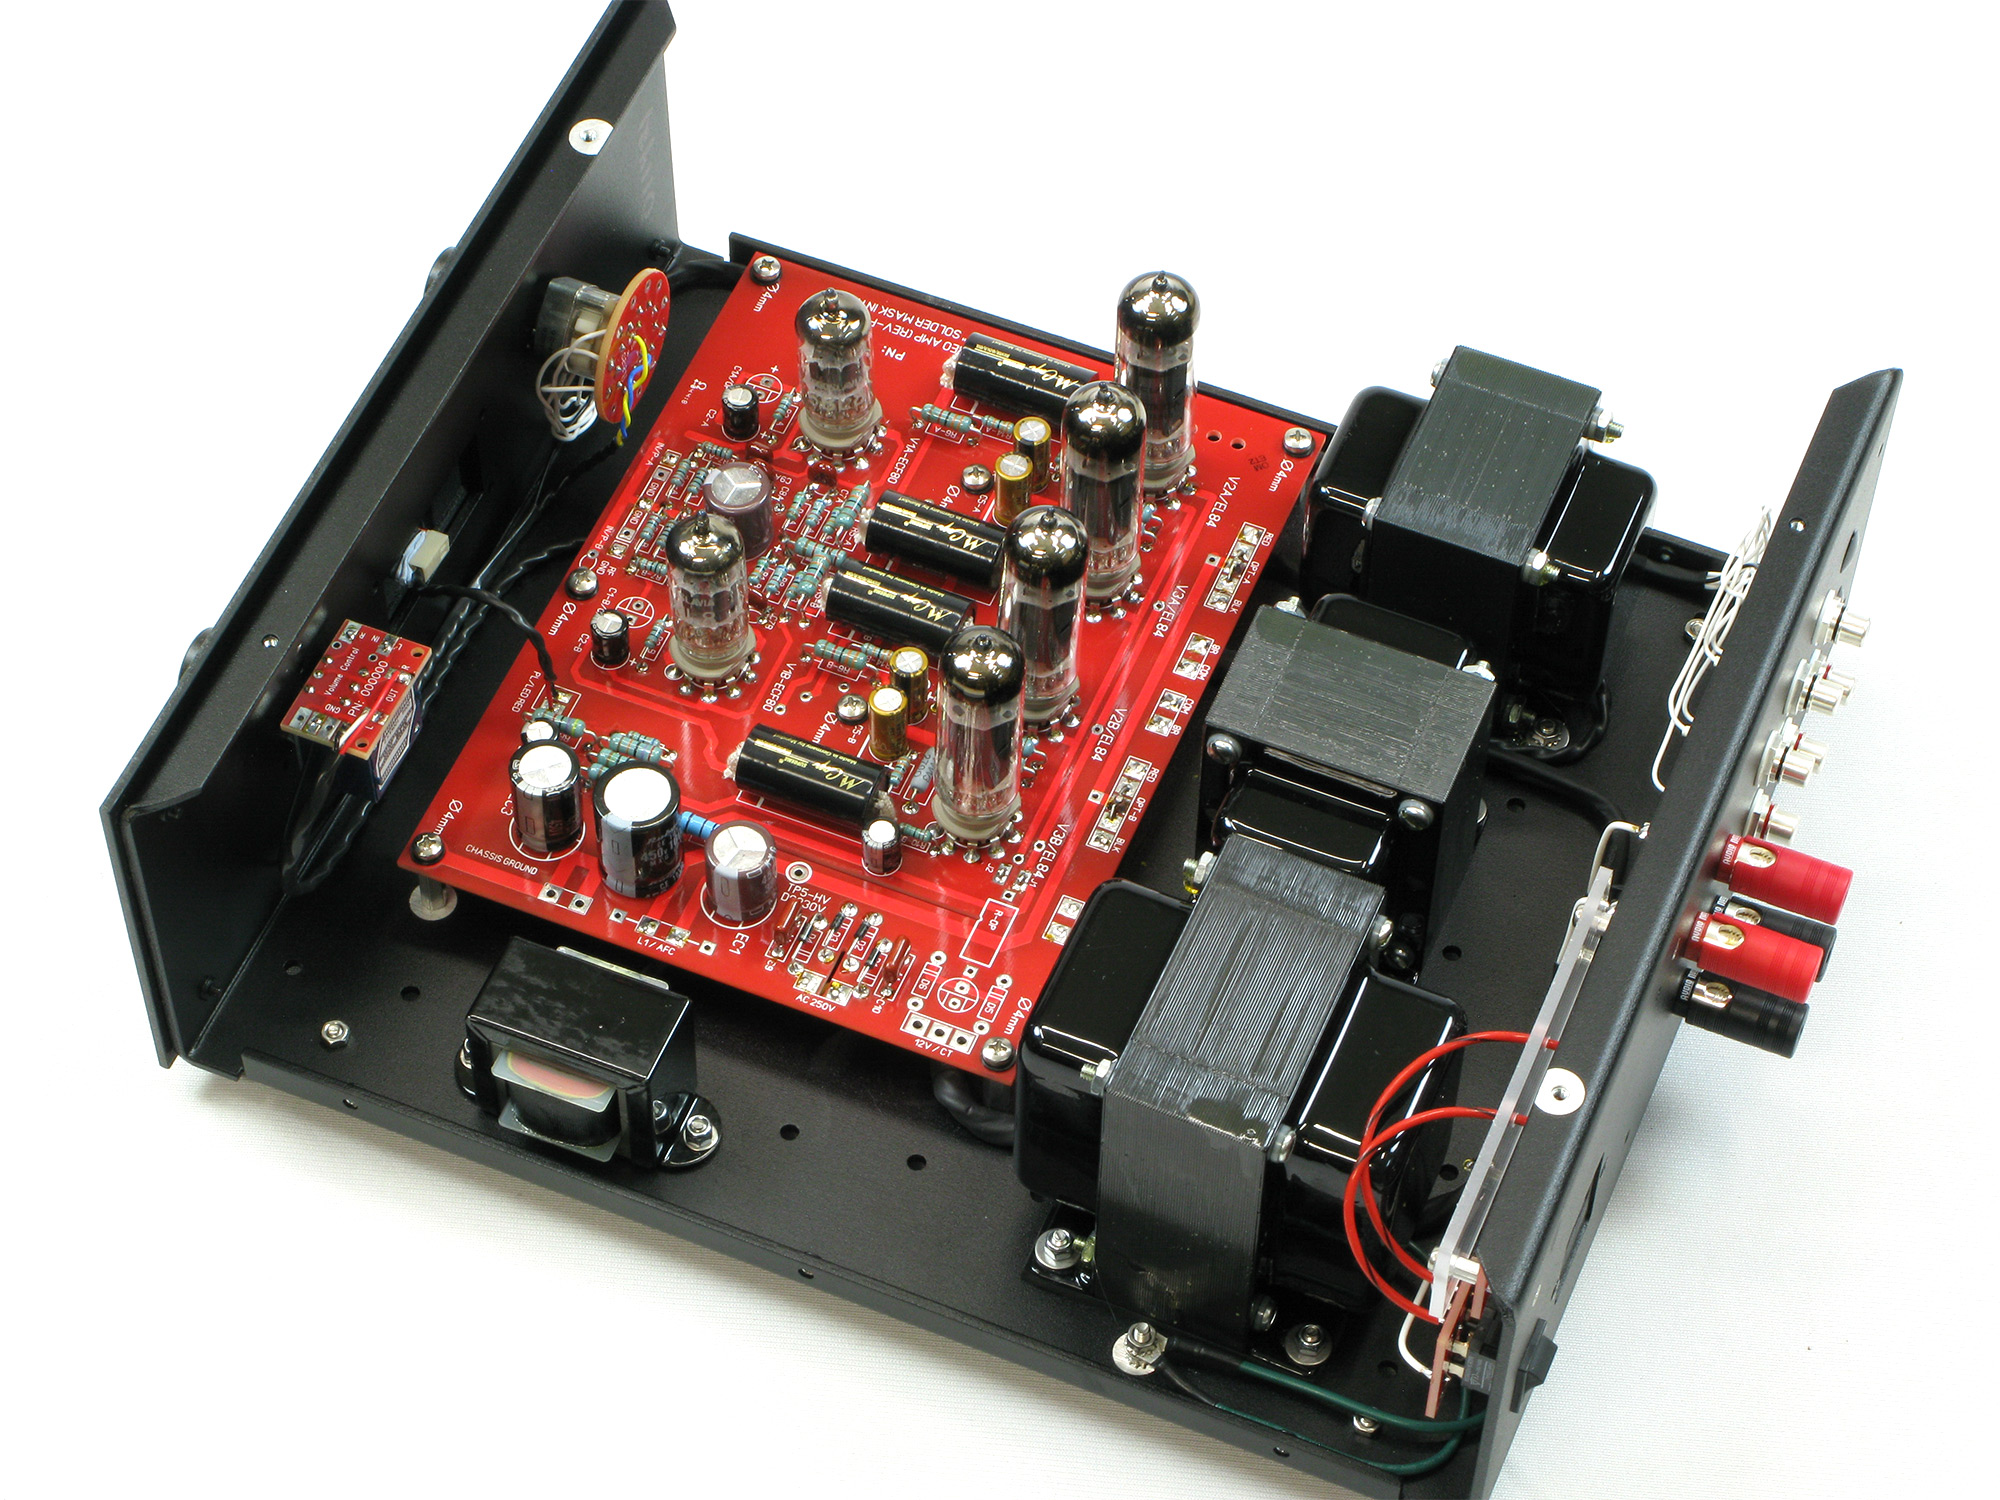 L1 EL84 V2 Integrated Amplifier – ANK Audio Kits